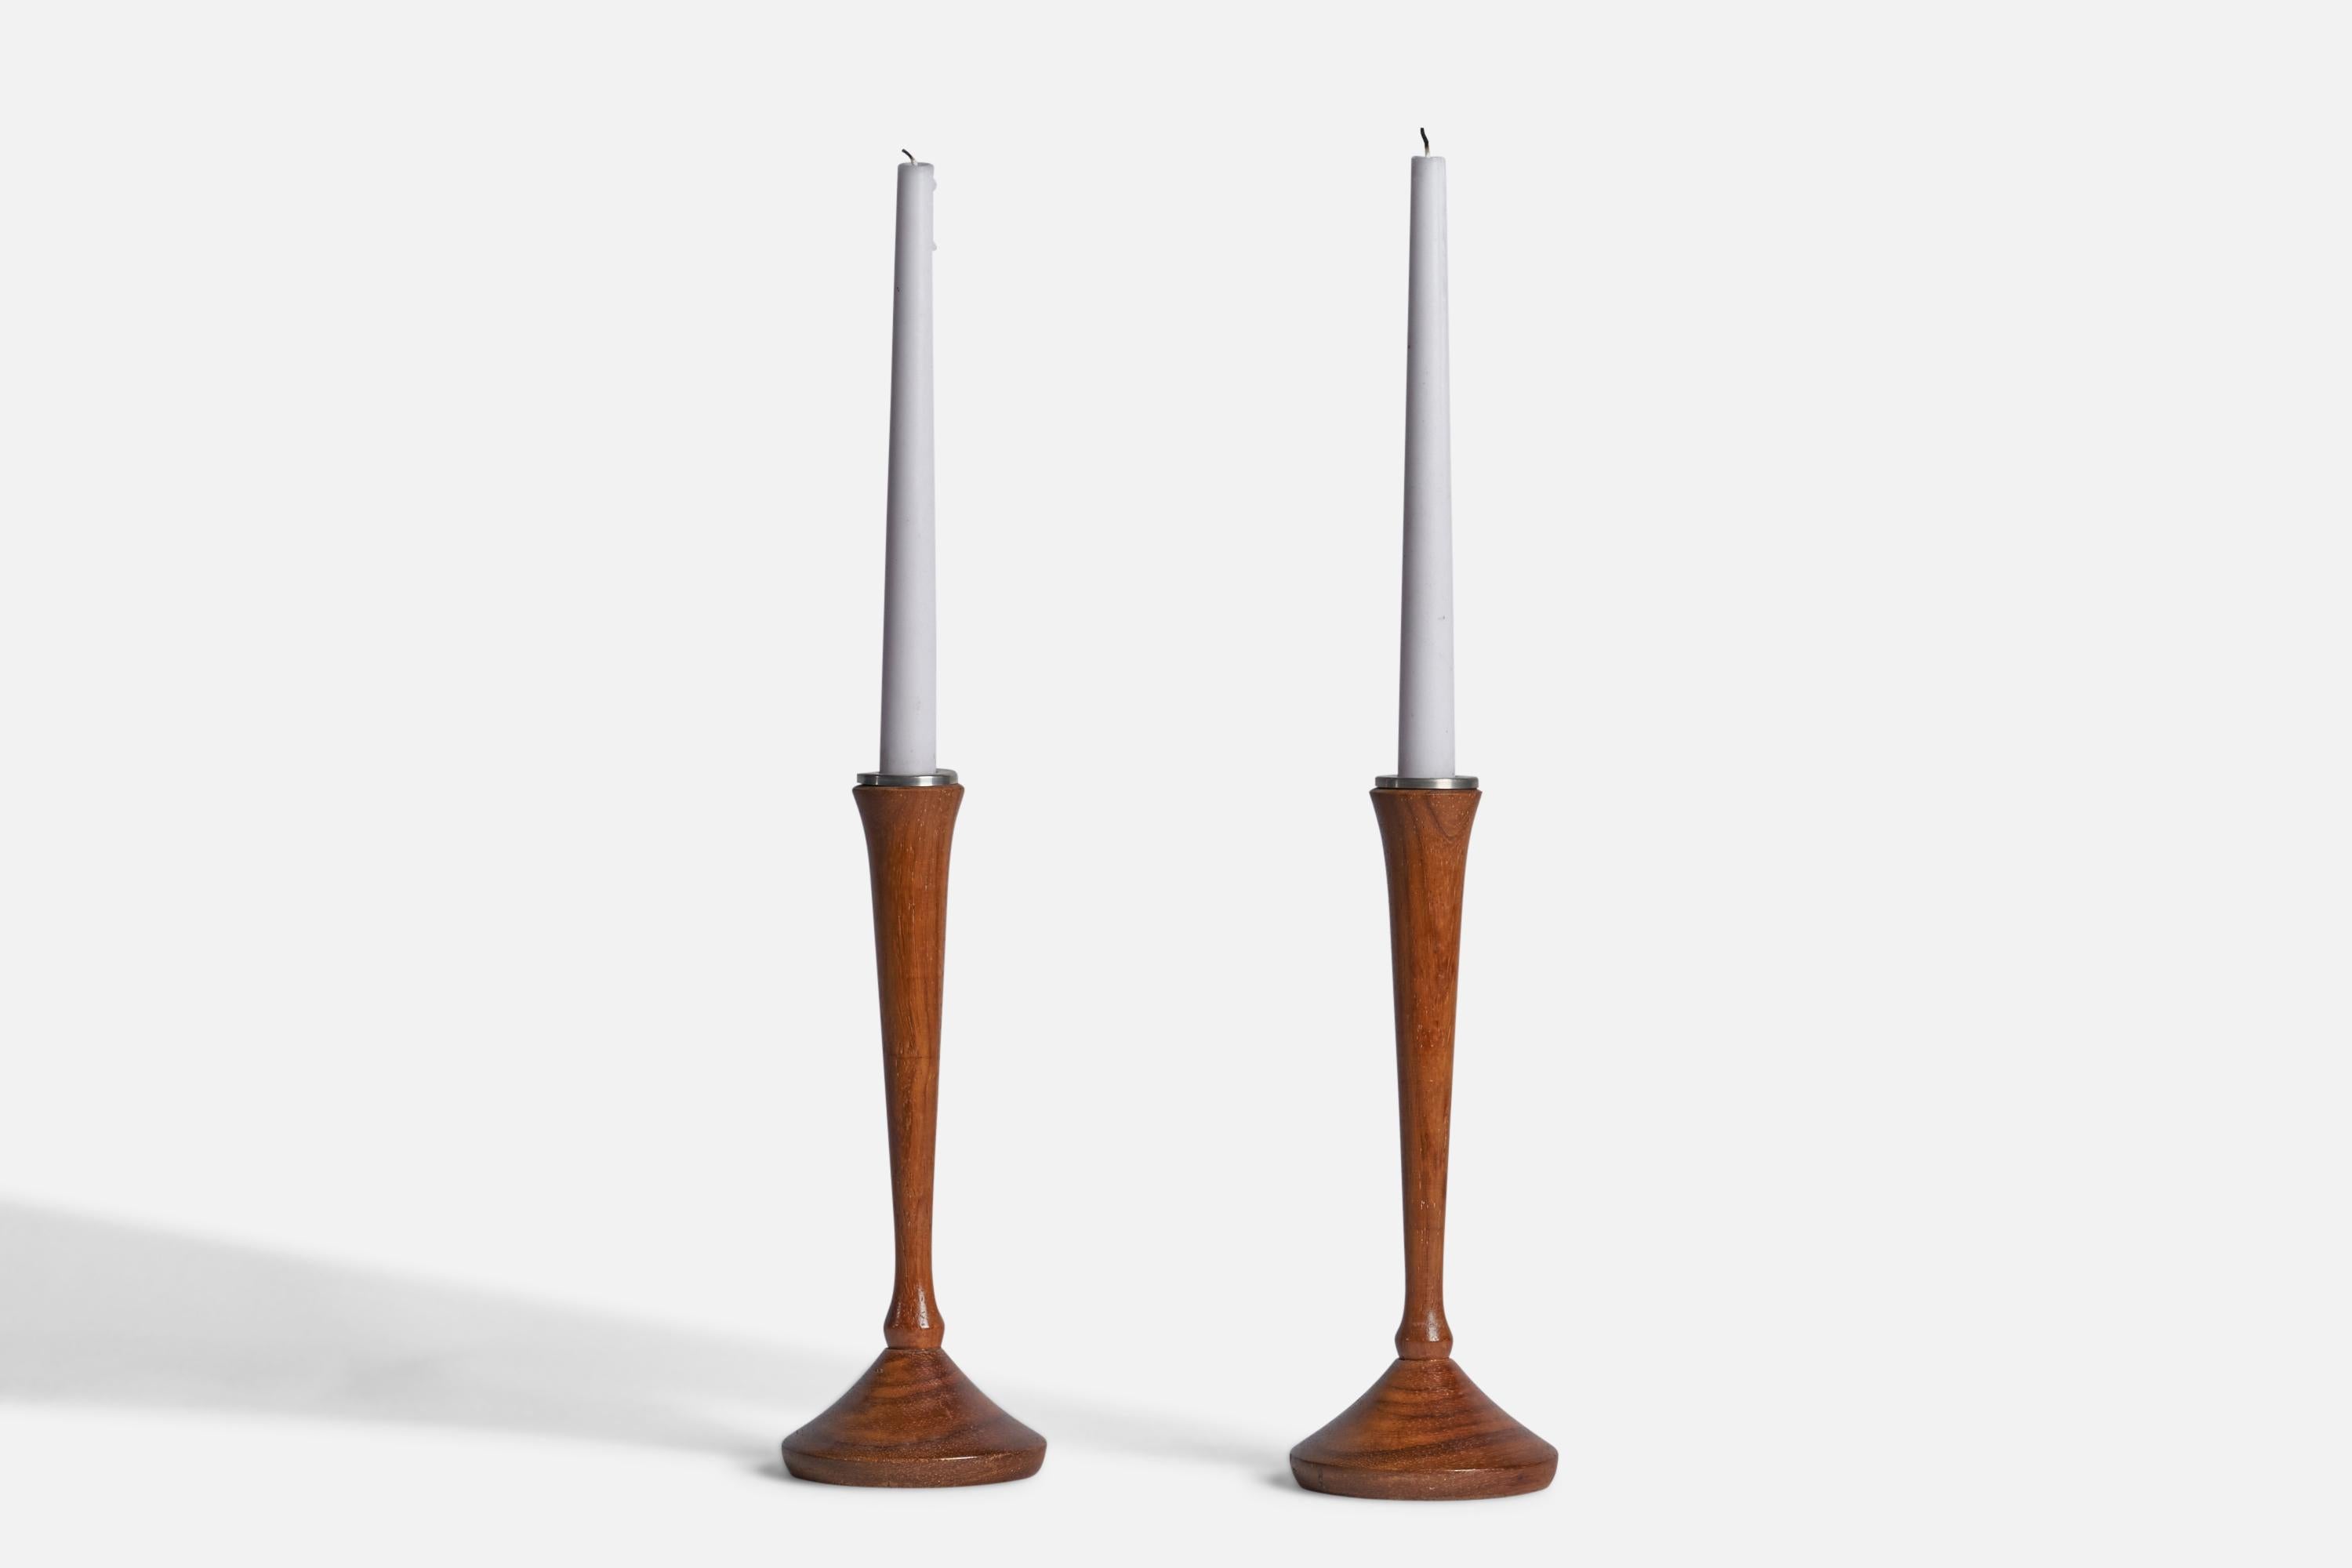 Ein Paar Kerzenständer aus Nussbaum und Metall, entworfen und hergestellt in Dänemark, 1950er Jahre.

Hält 0,75